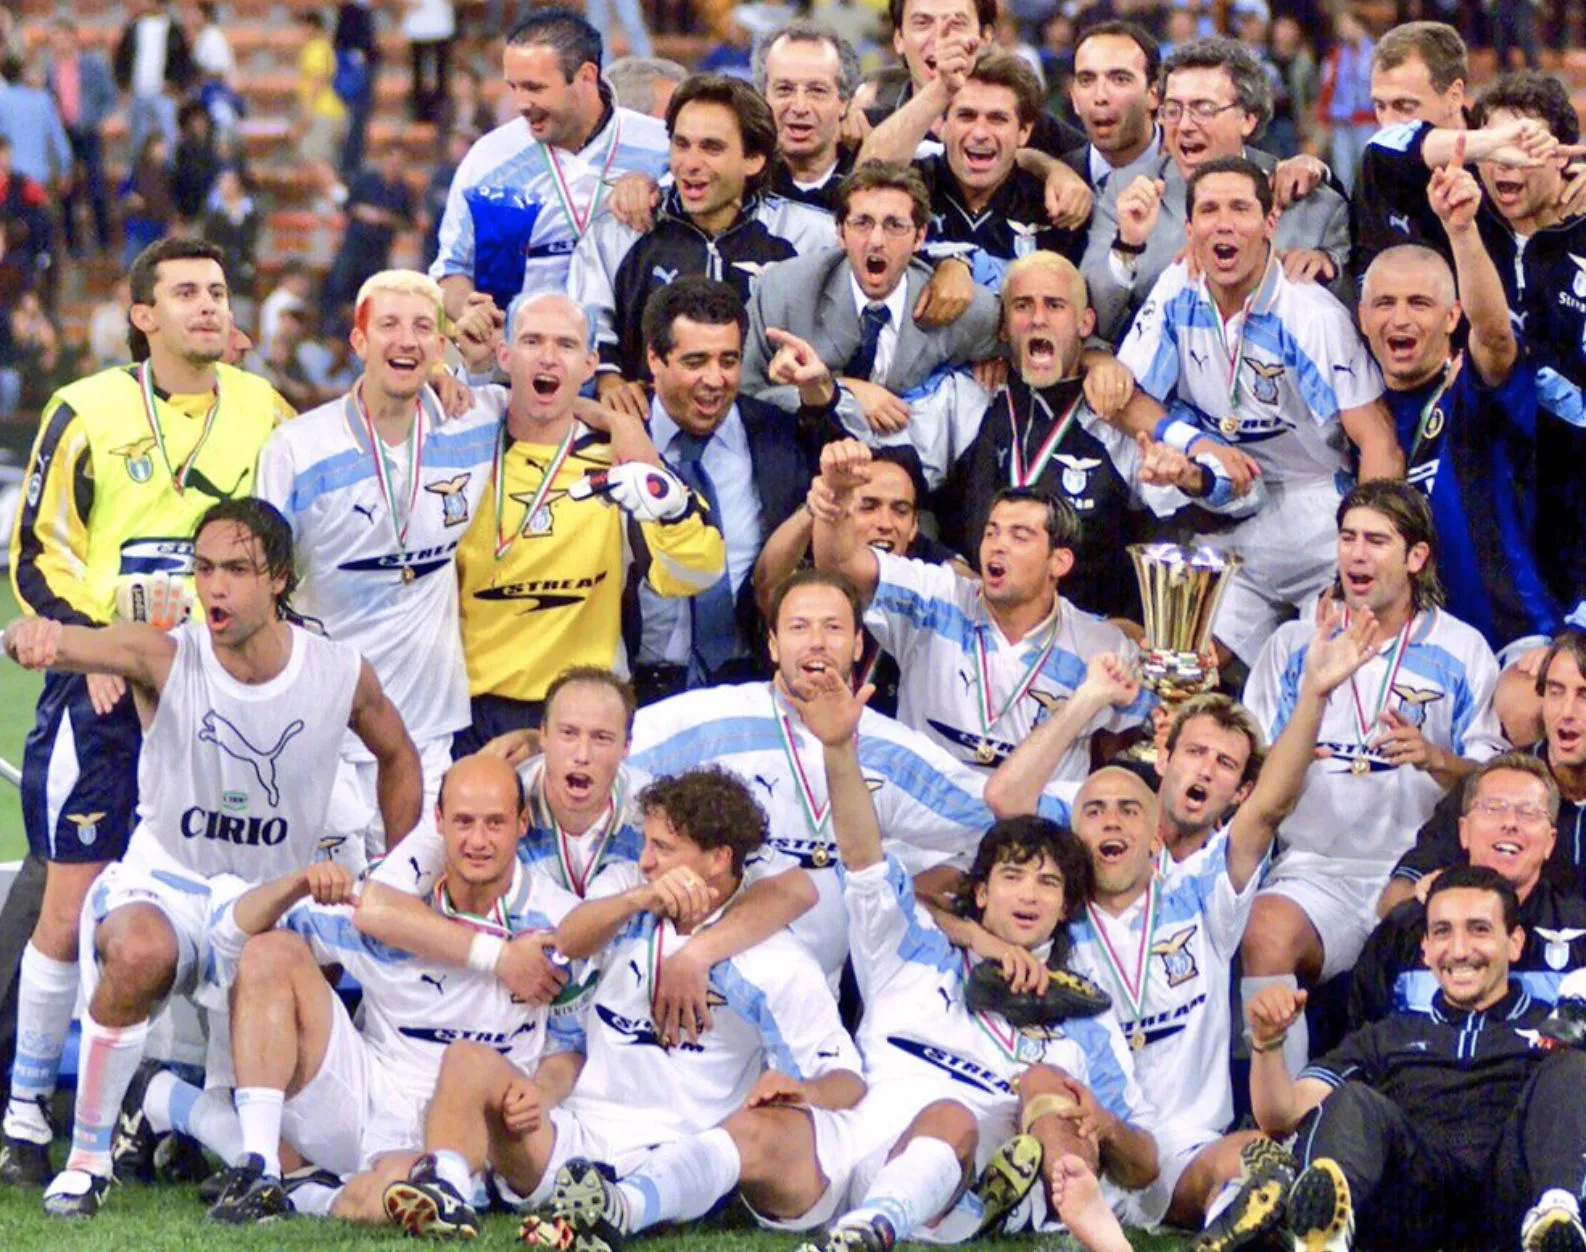 Il y a 20 ans, la Lazio remportait le Scudetto